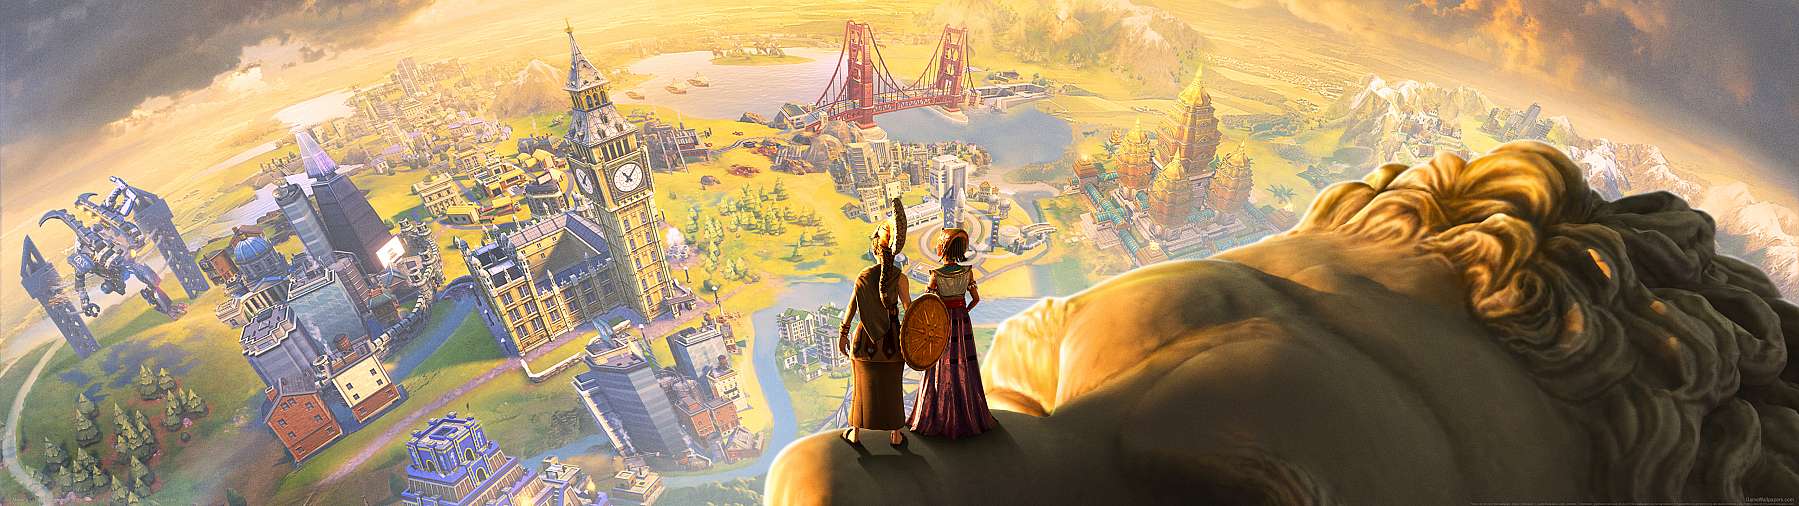 Sid Meier's Civilization 6: Anthology superwide wallpaper or background 01